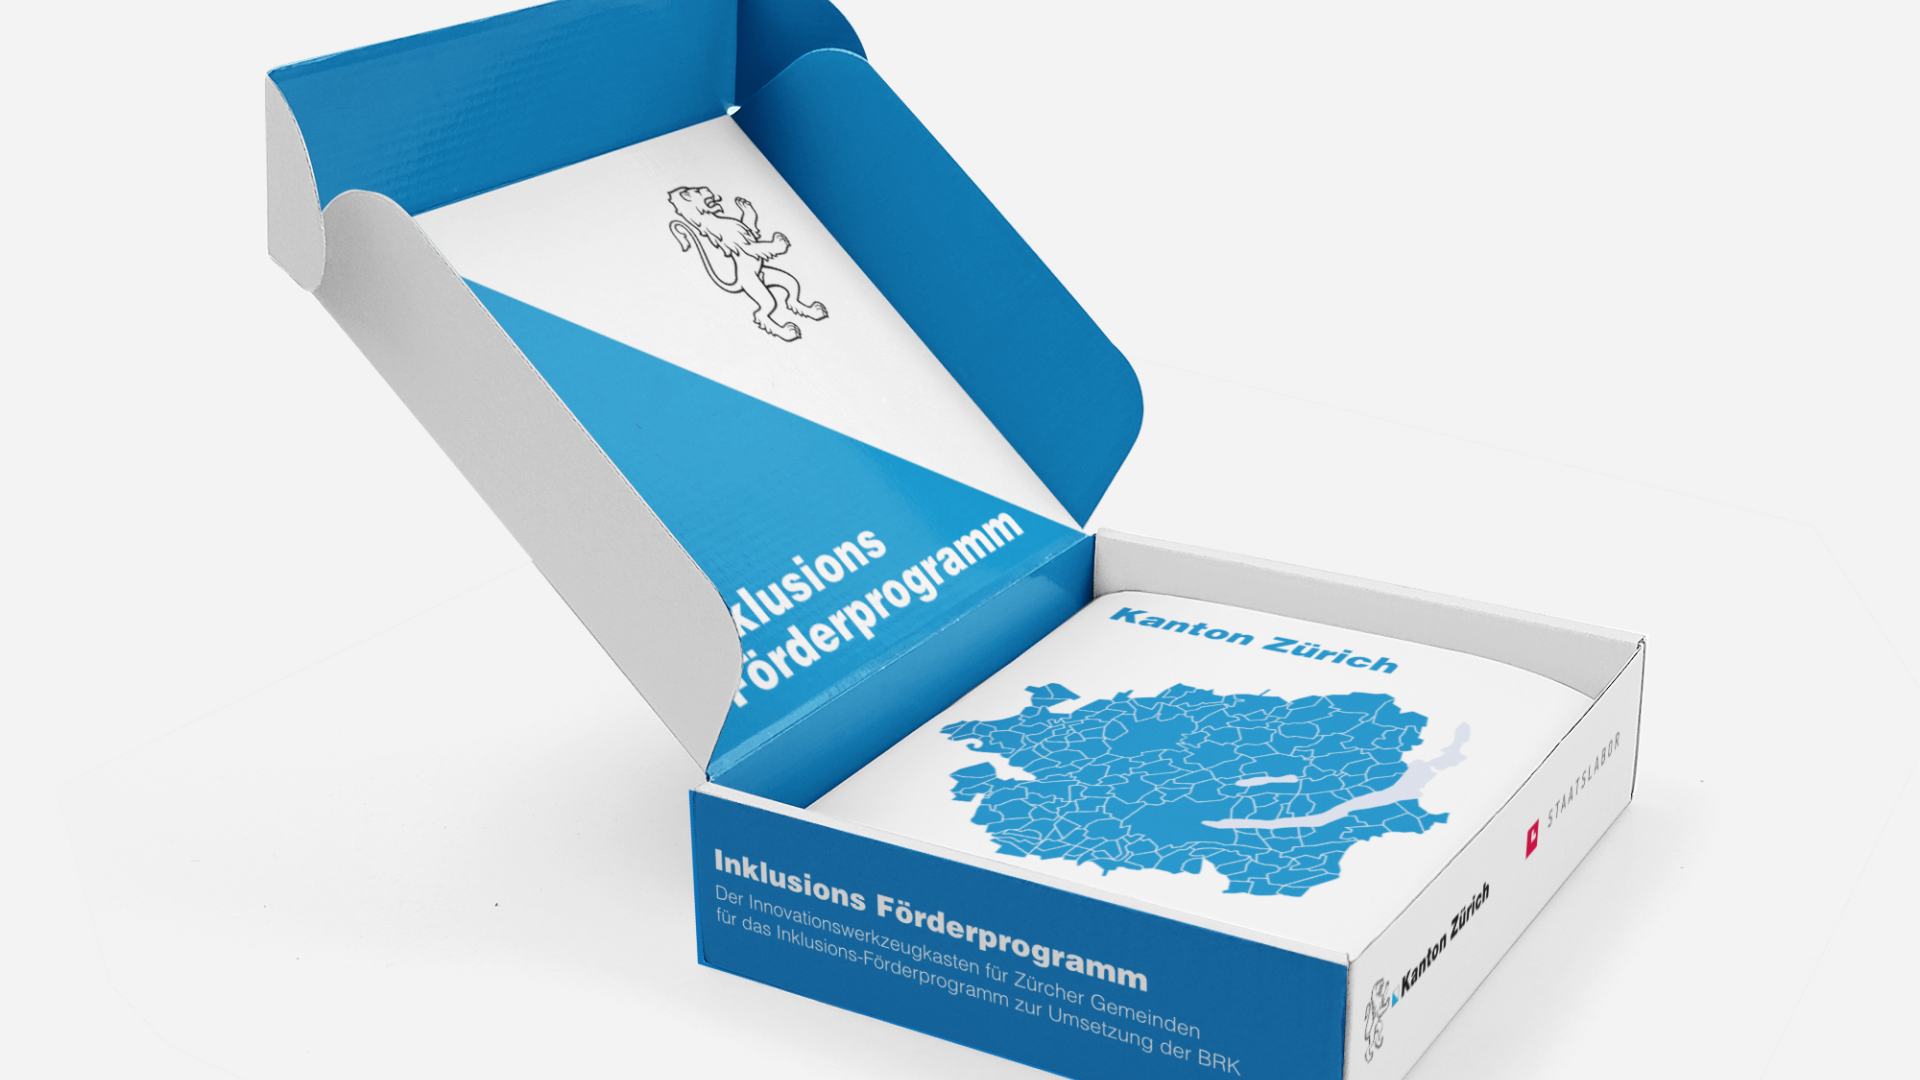 Darstellung einer Kartonschachtel mit einer Abbildung des Kantons Zürich und der Beschriftung "Inklusions-Förderprogramm"